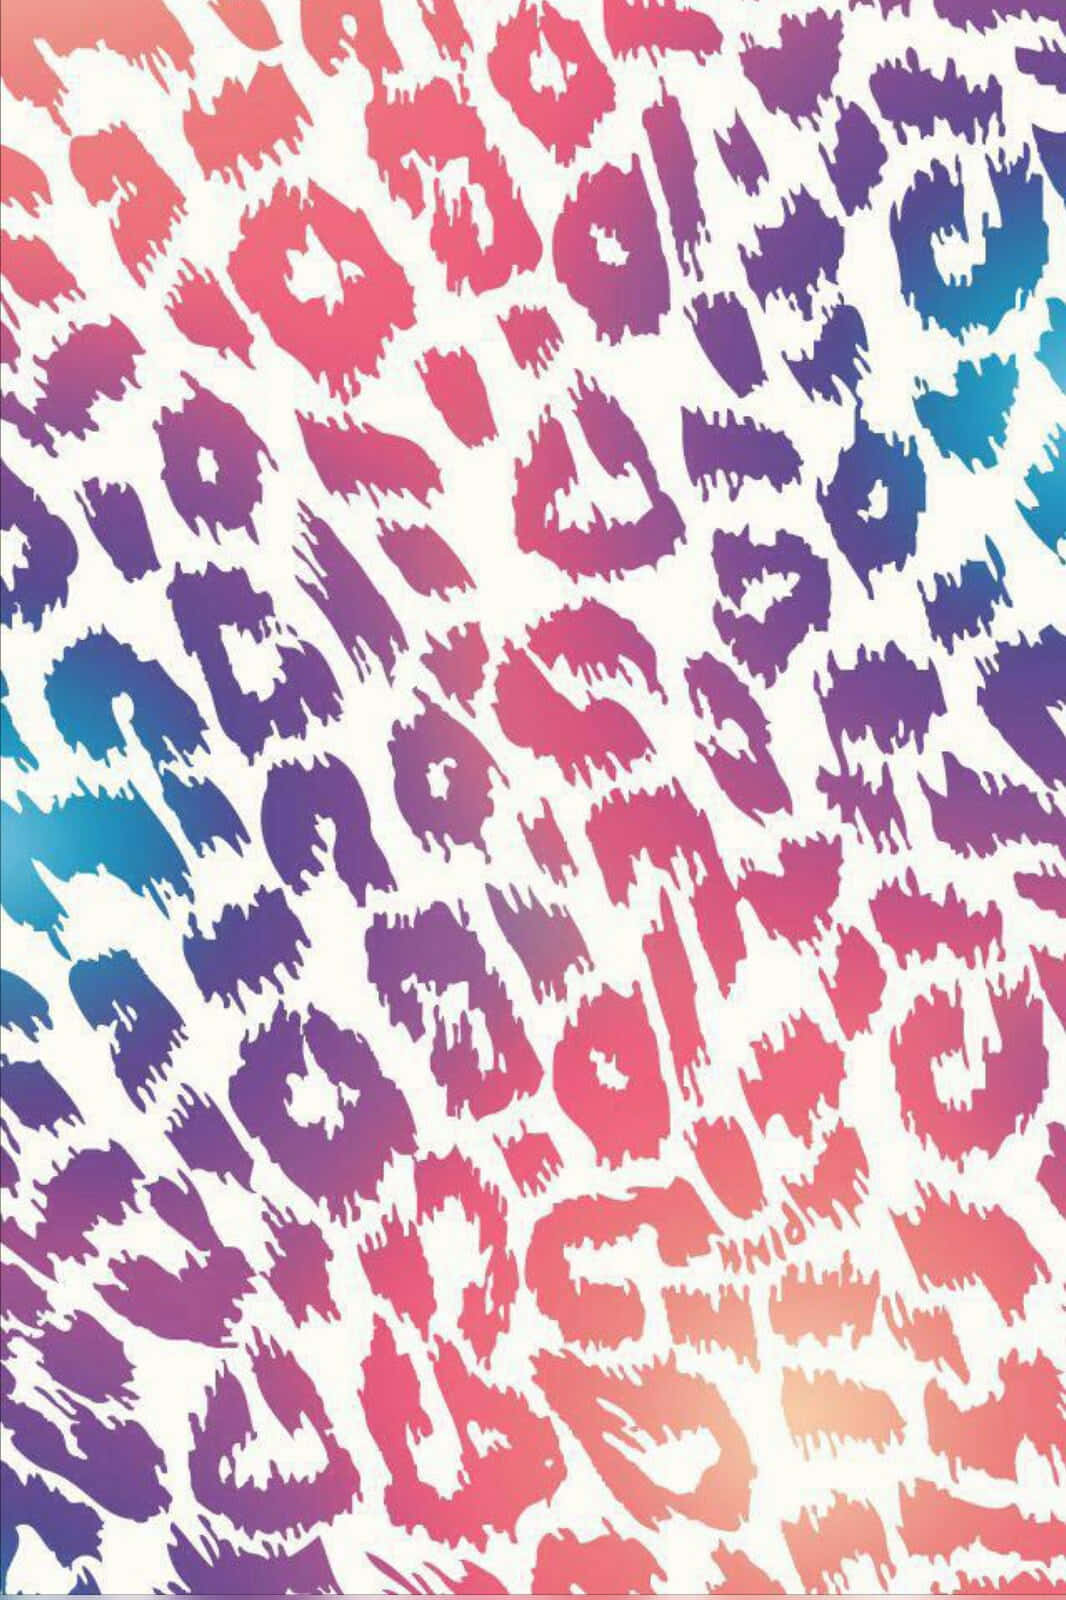 Wild Leopard Pattern Wallpaper